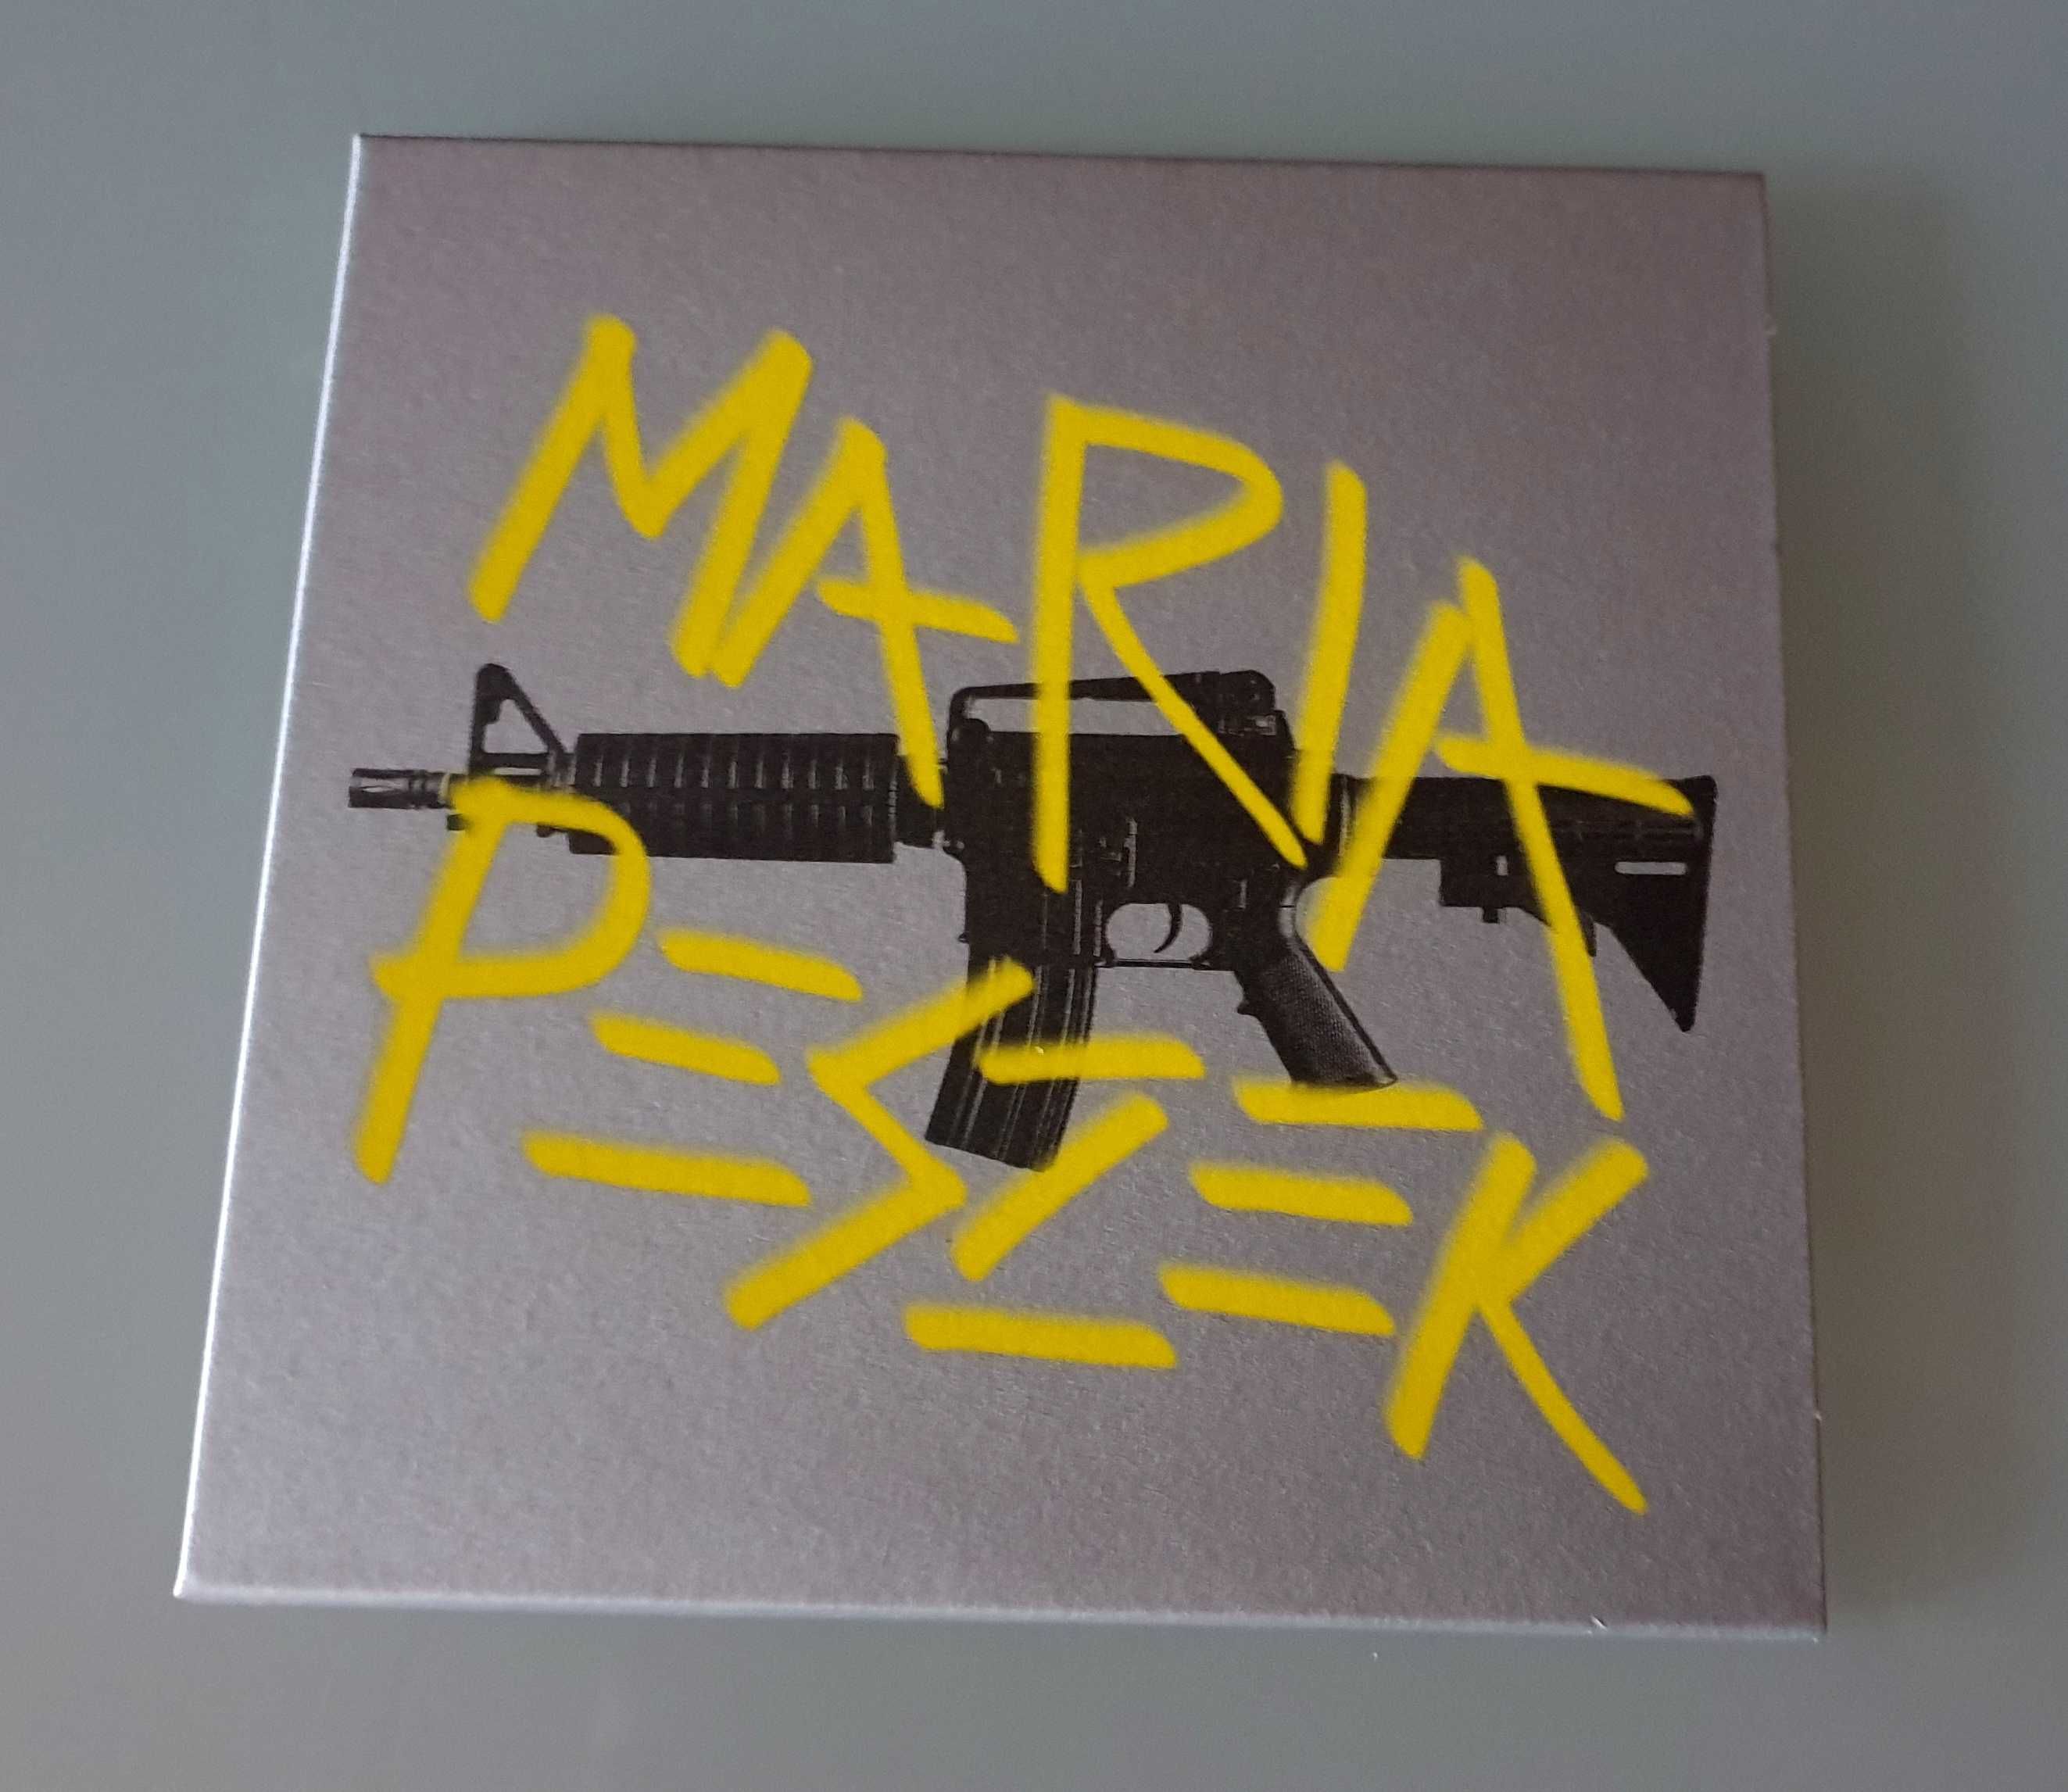 Płyta CD / album Maria Peszek - Karabin